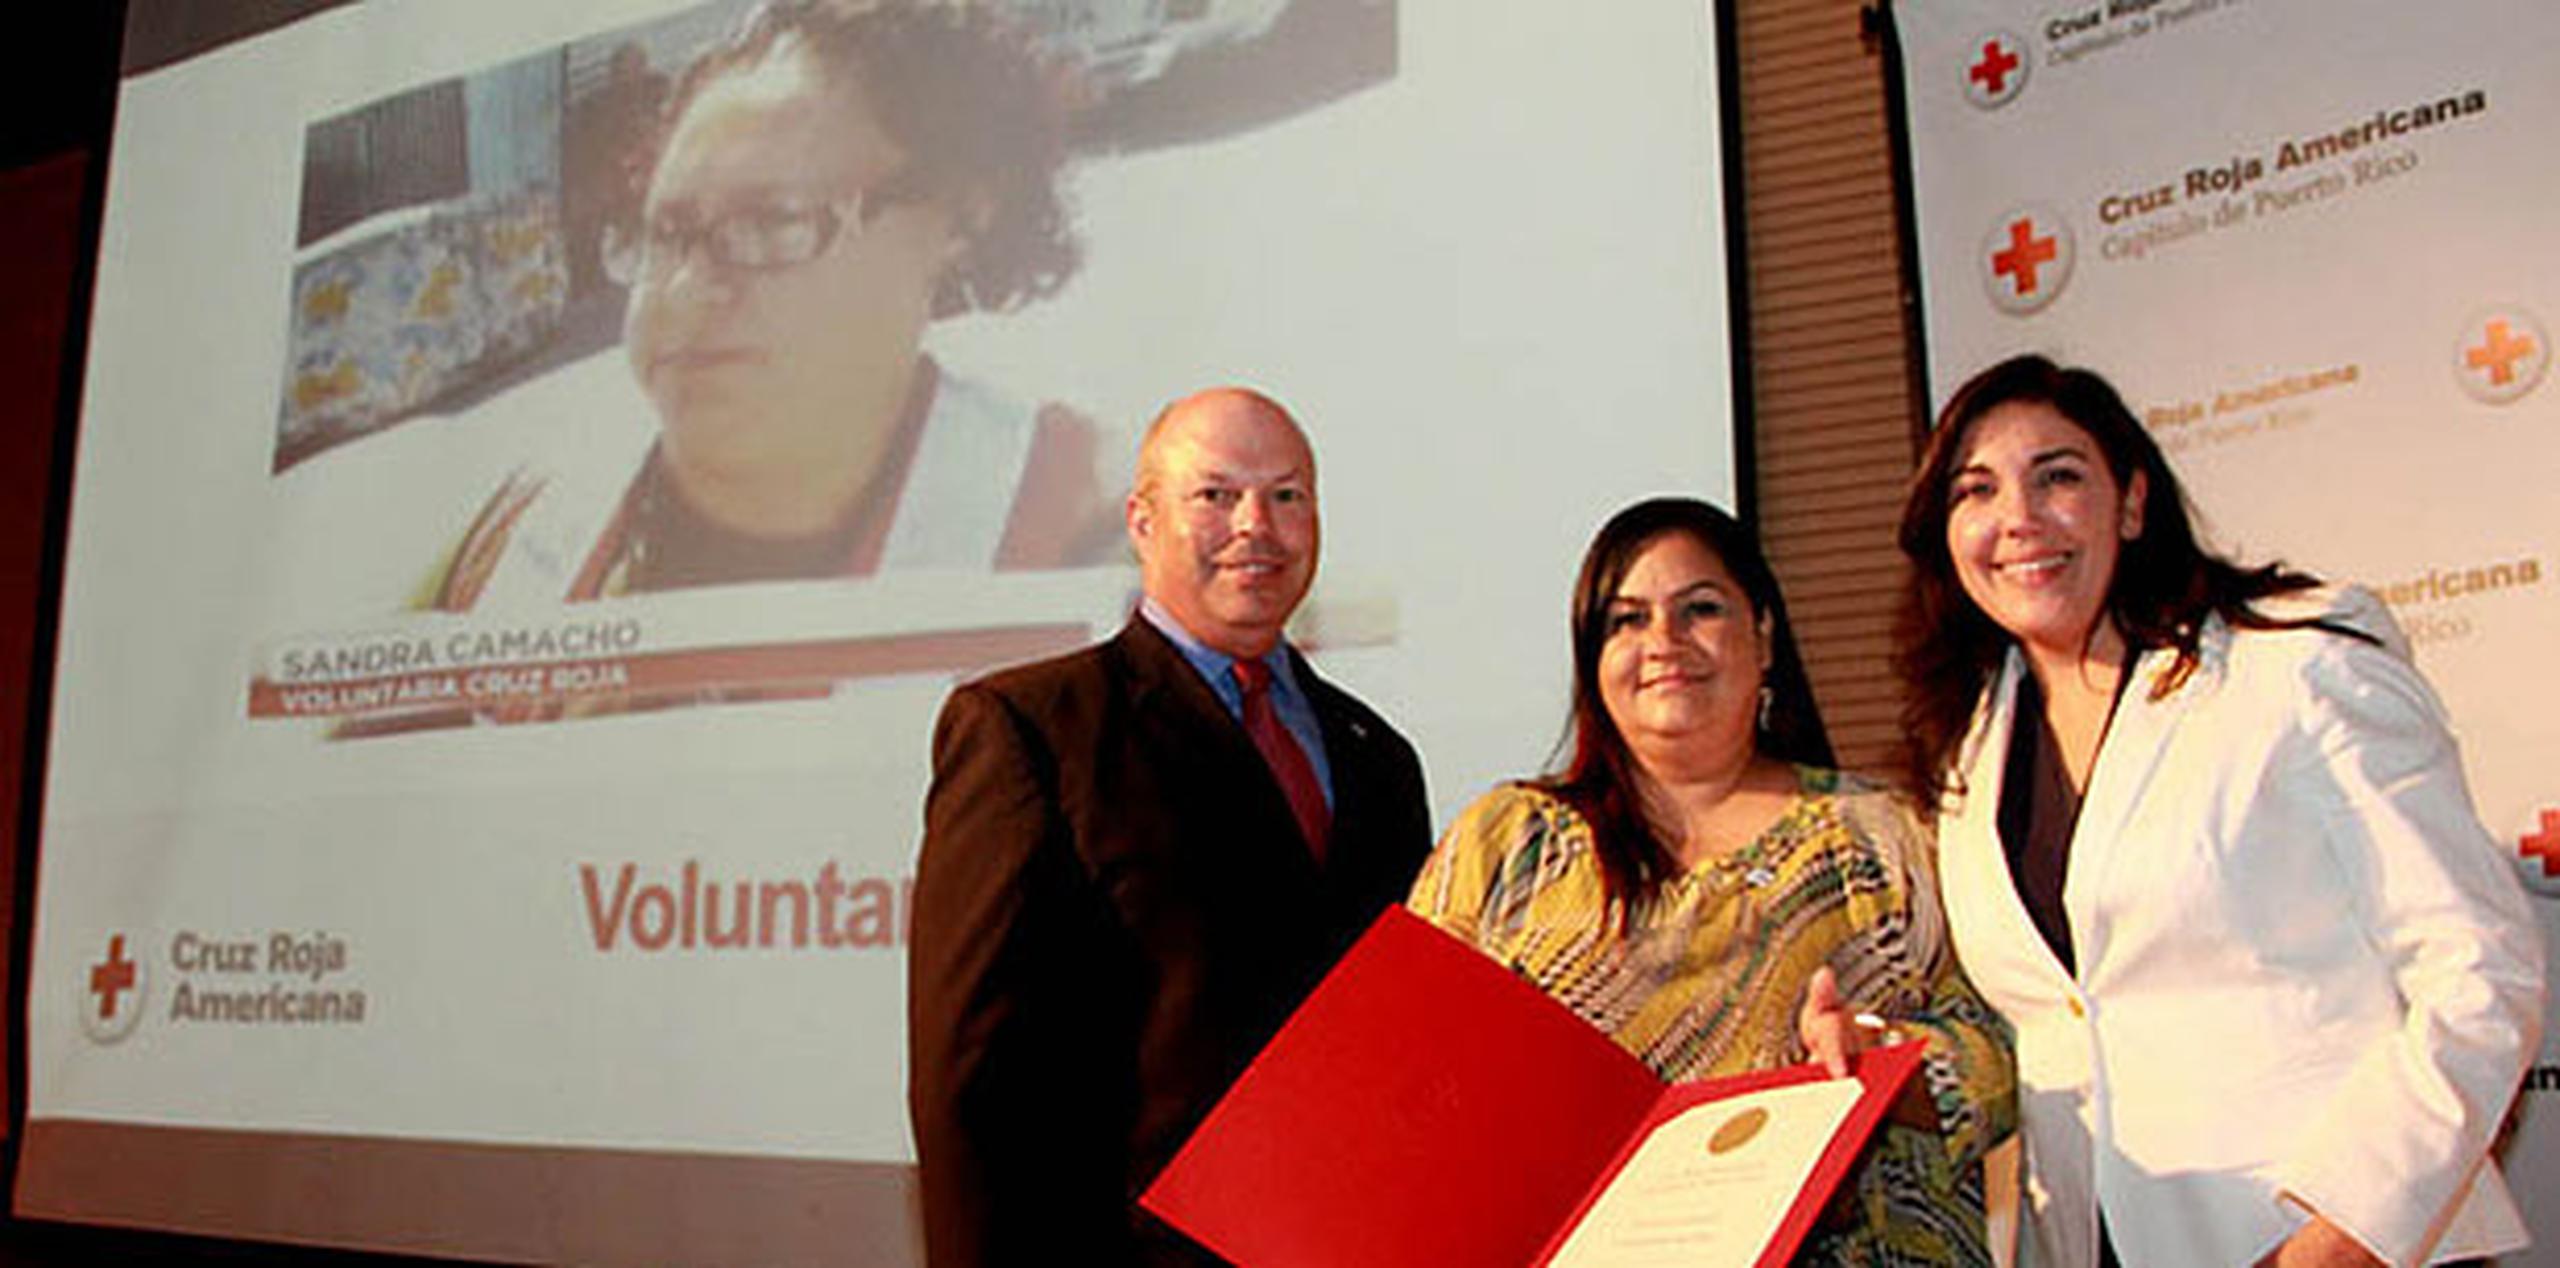 Rosa Ivelisse Camacho recibió el premio de Voluntaria del Año a nombre de su hermana, la voluntaria Sandra Camacho en la Asamblea Anual 2013. (Suministrada)